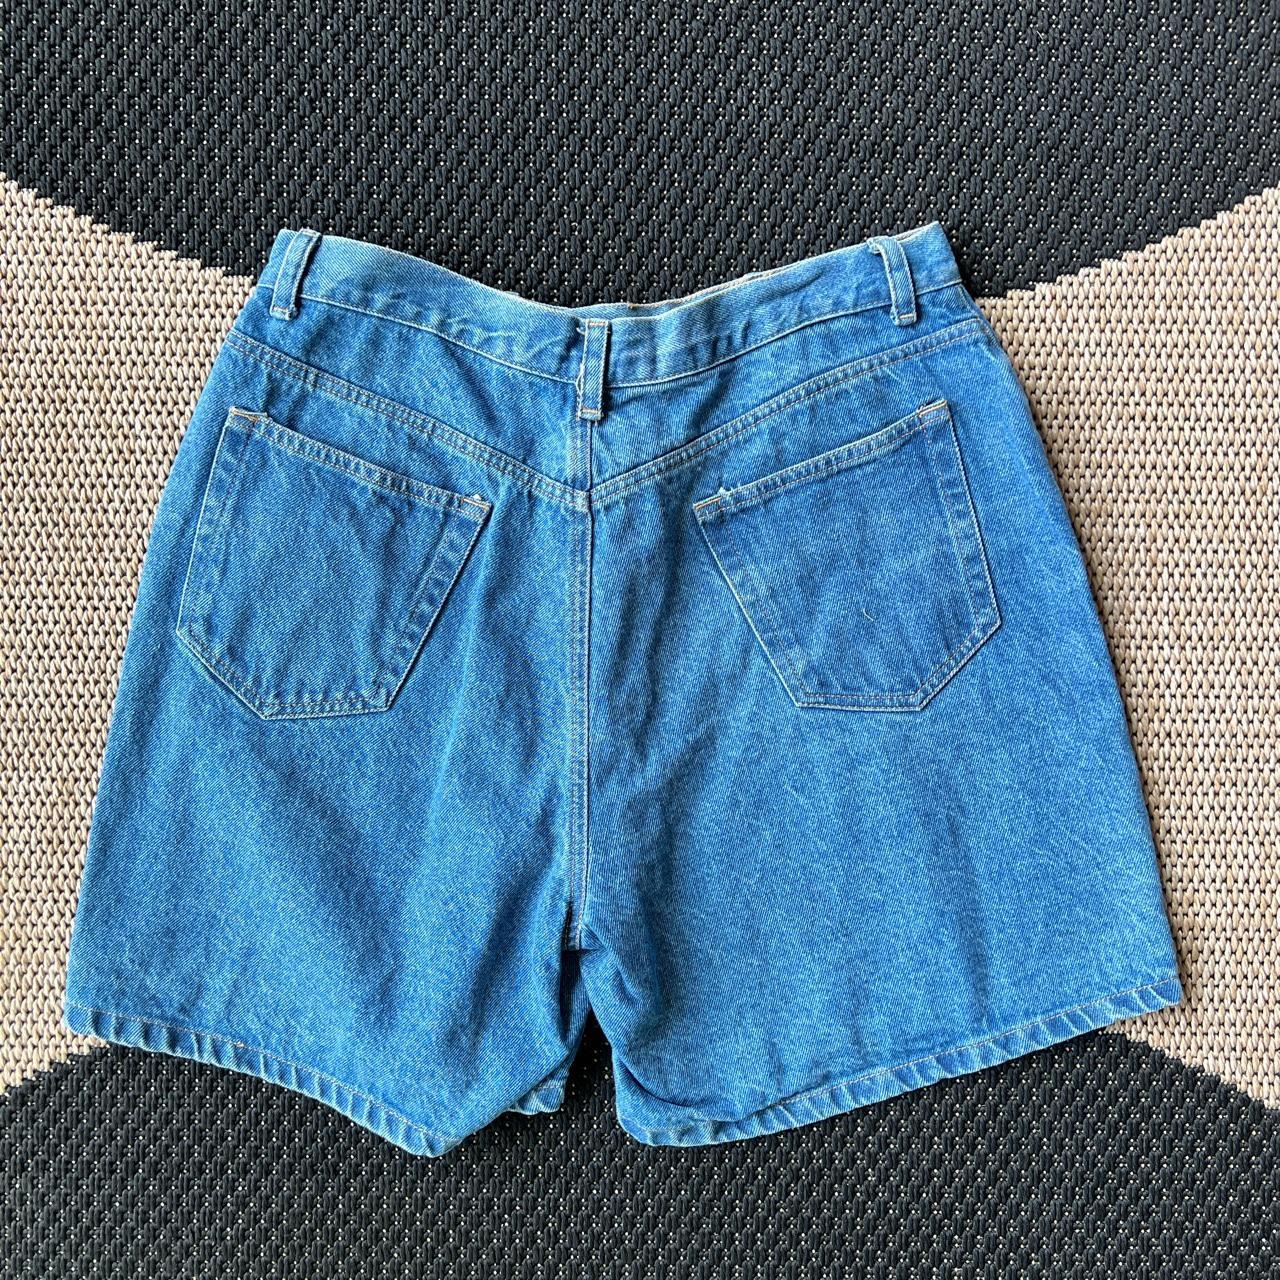 Vintage Liz Claiborne denim shorts. Size 12 Waist:... - Depop